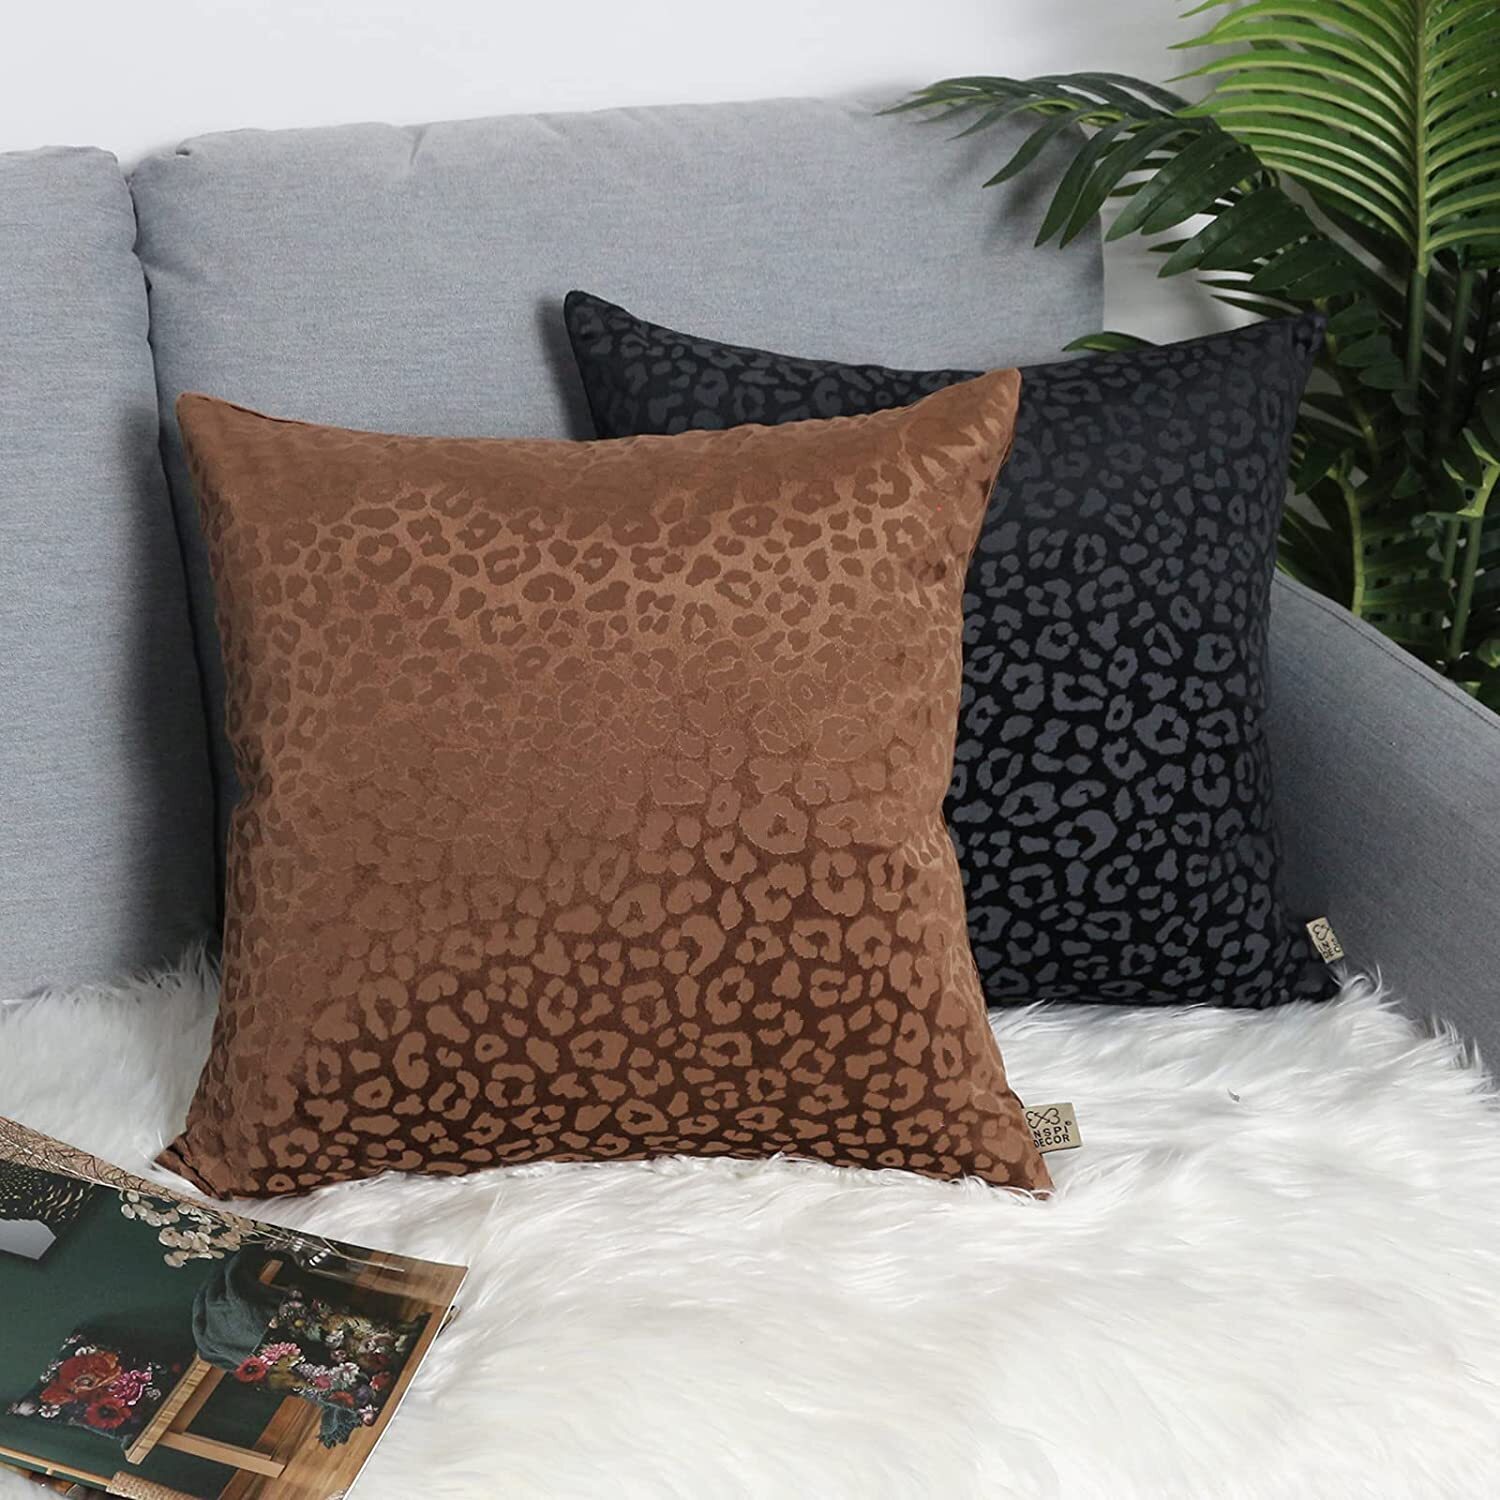 Stippled Leopard Pillows